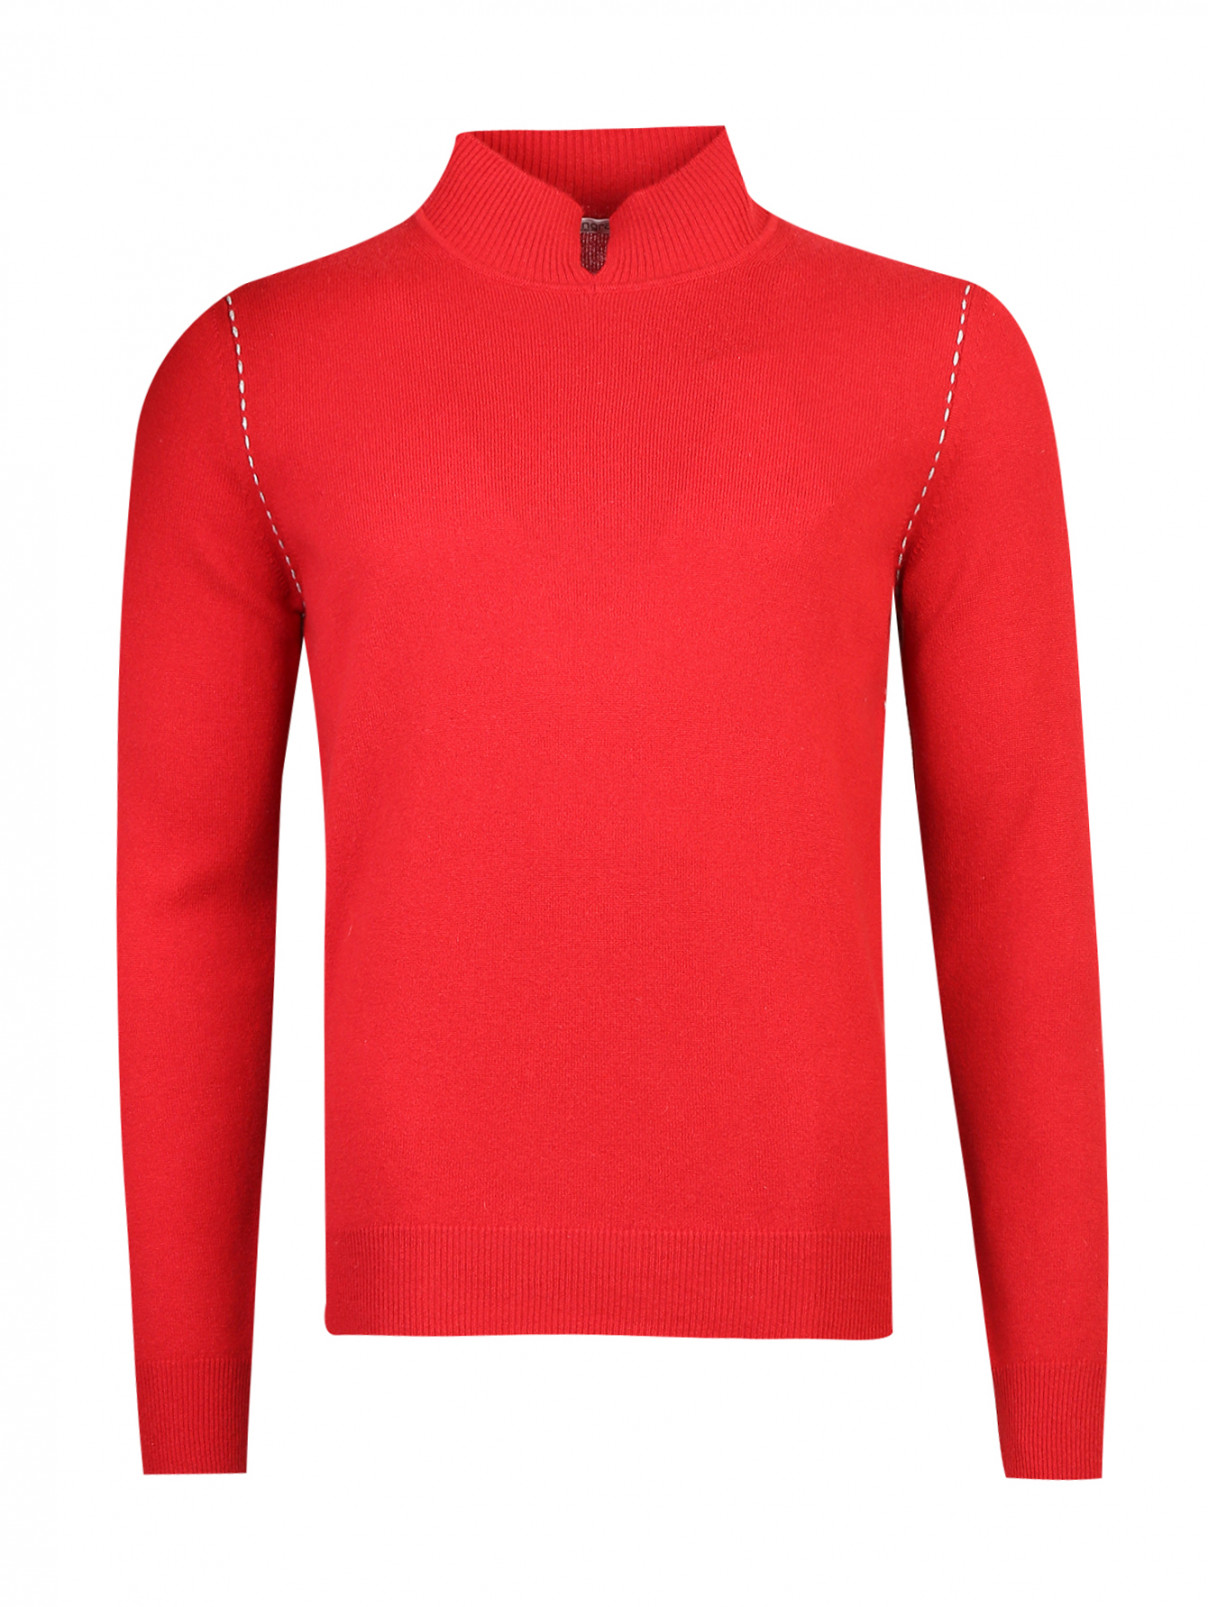 Джемпер из шерсти Kangra Cashmere  –  Общий вид  – Цвет:  Красный